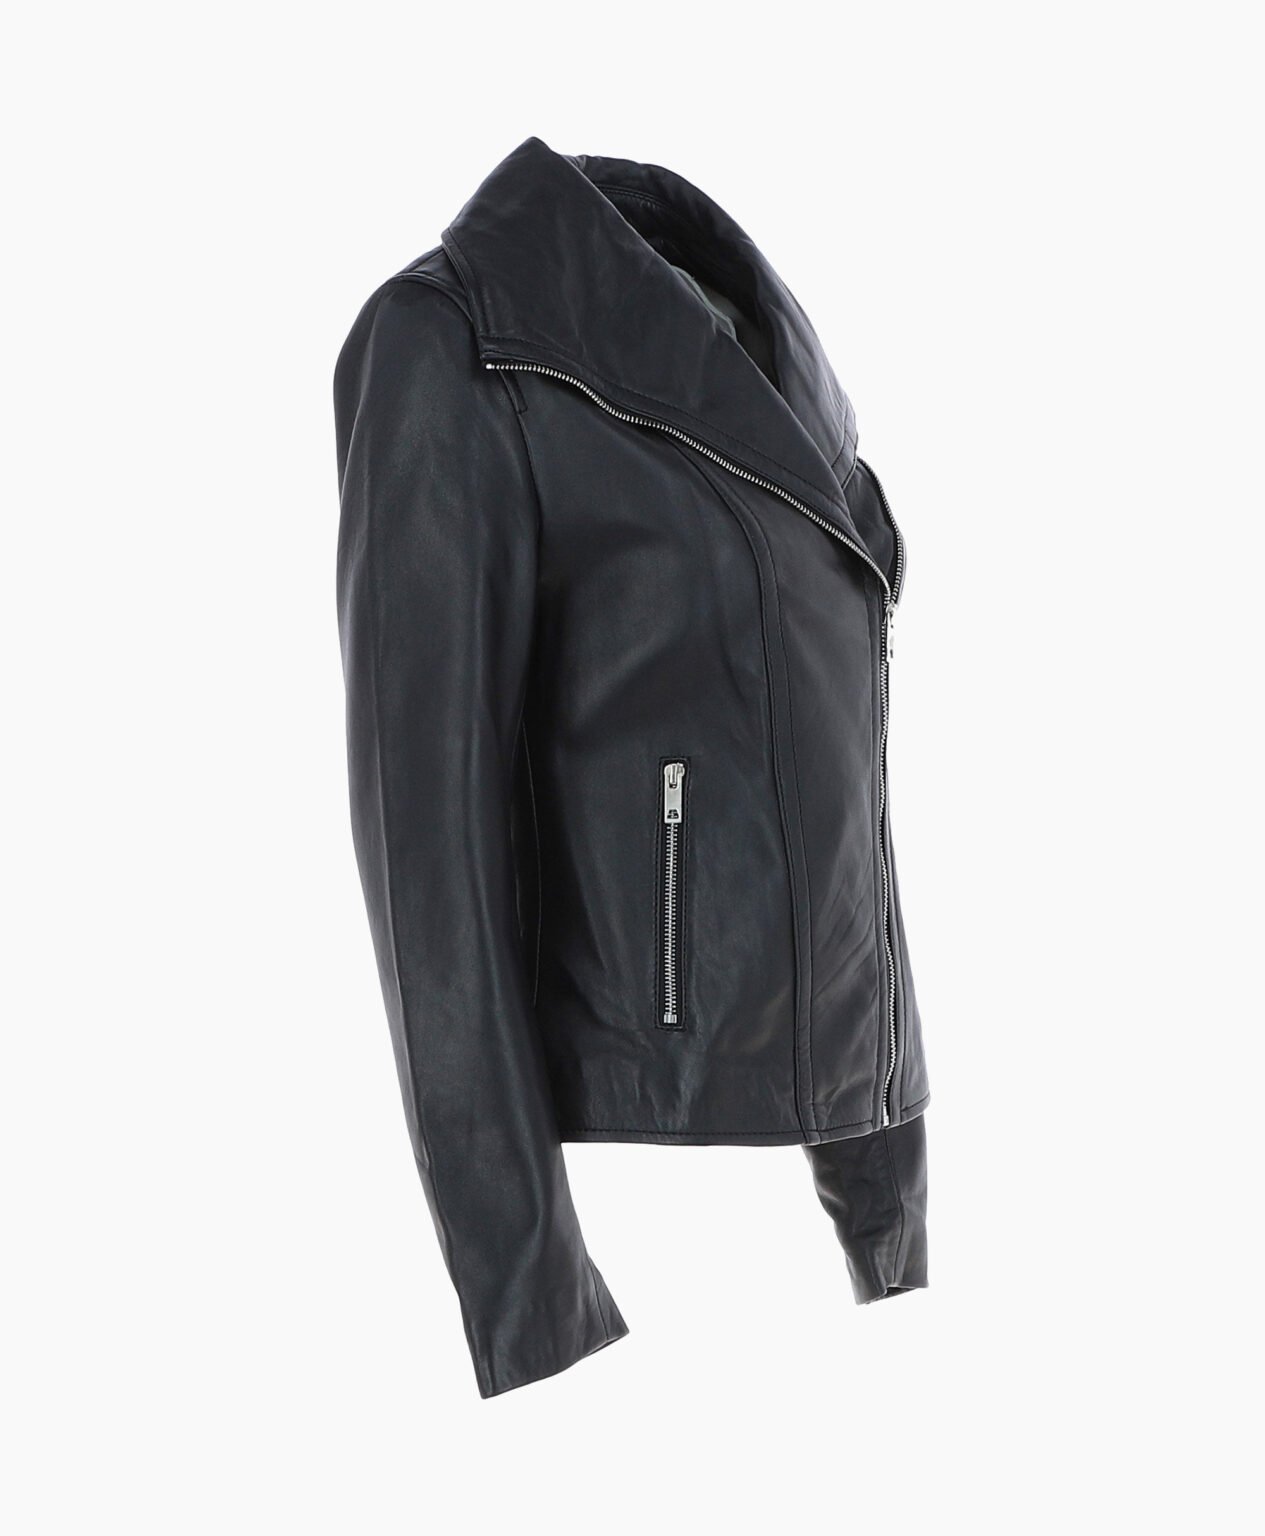 vogue-jacket-leather-jacket-fashion-collar-black-shelby-image203